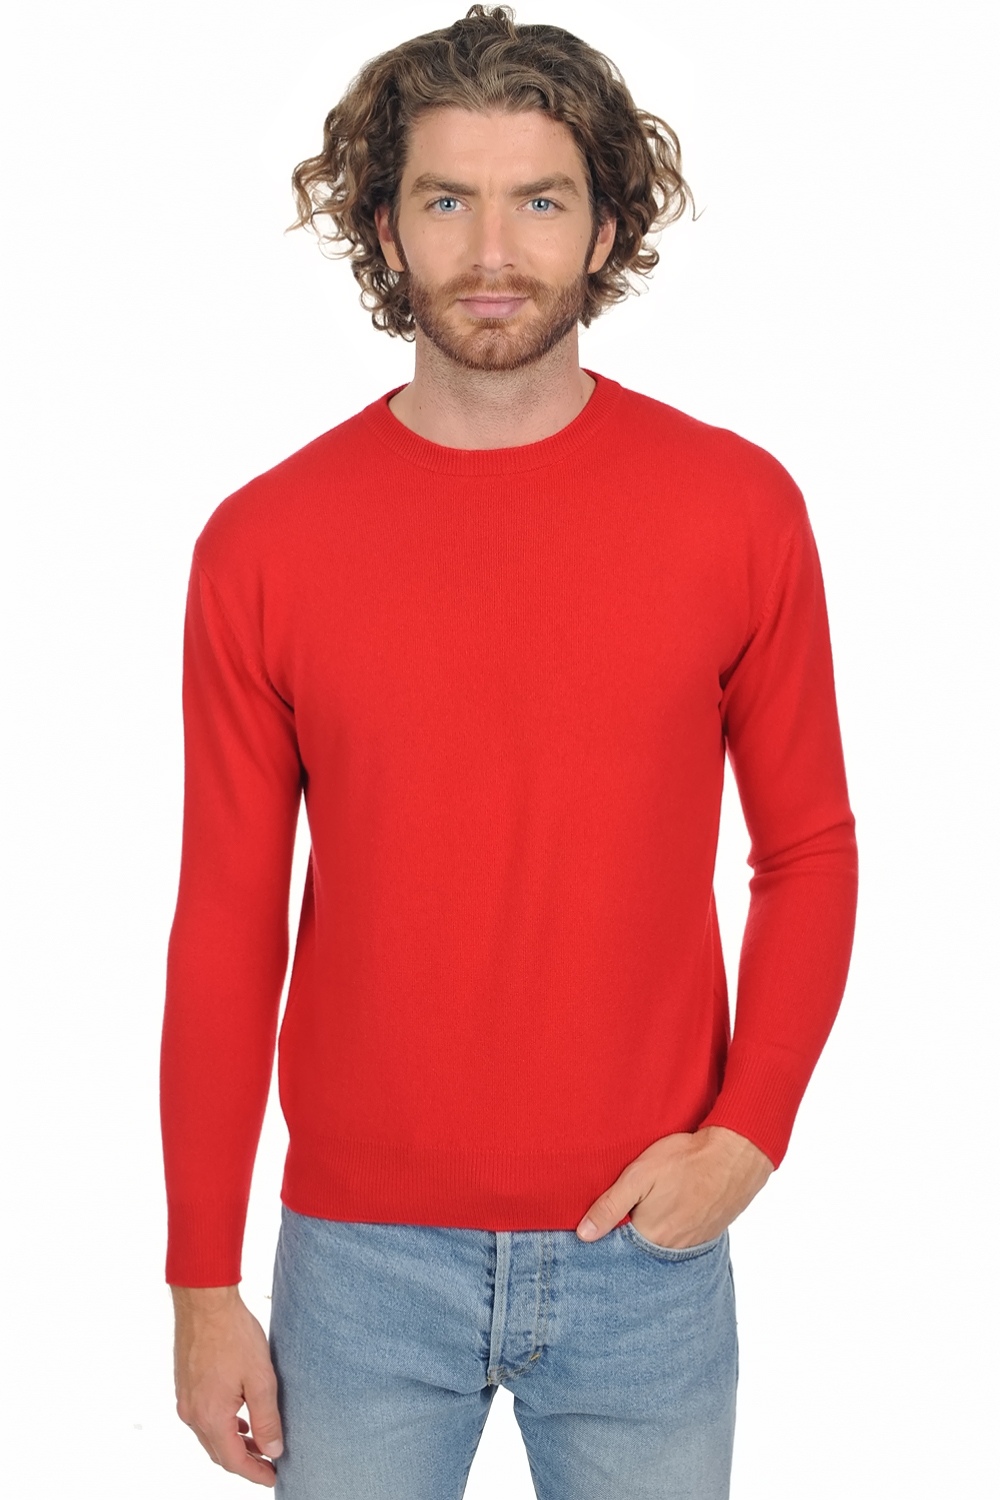 Cashmere men premium sweaters nestor premium tango red 4xl